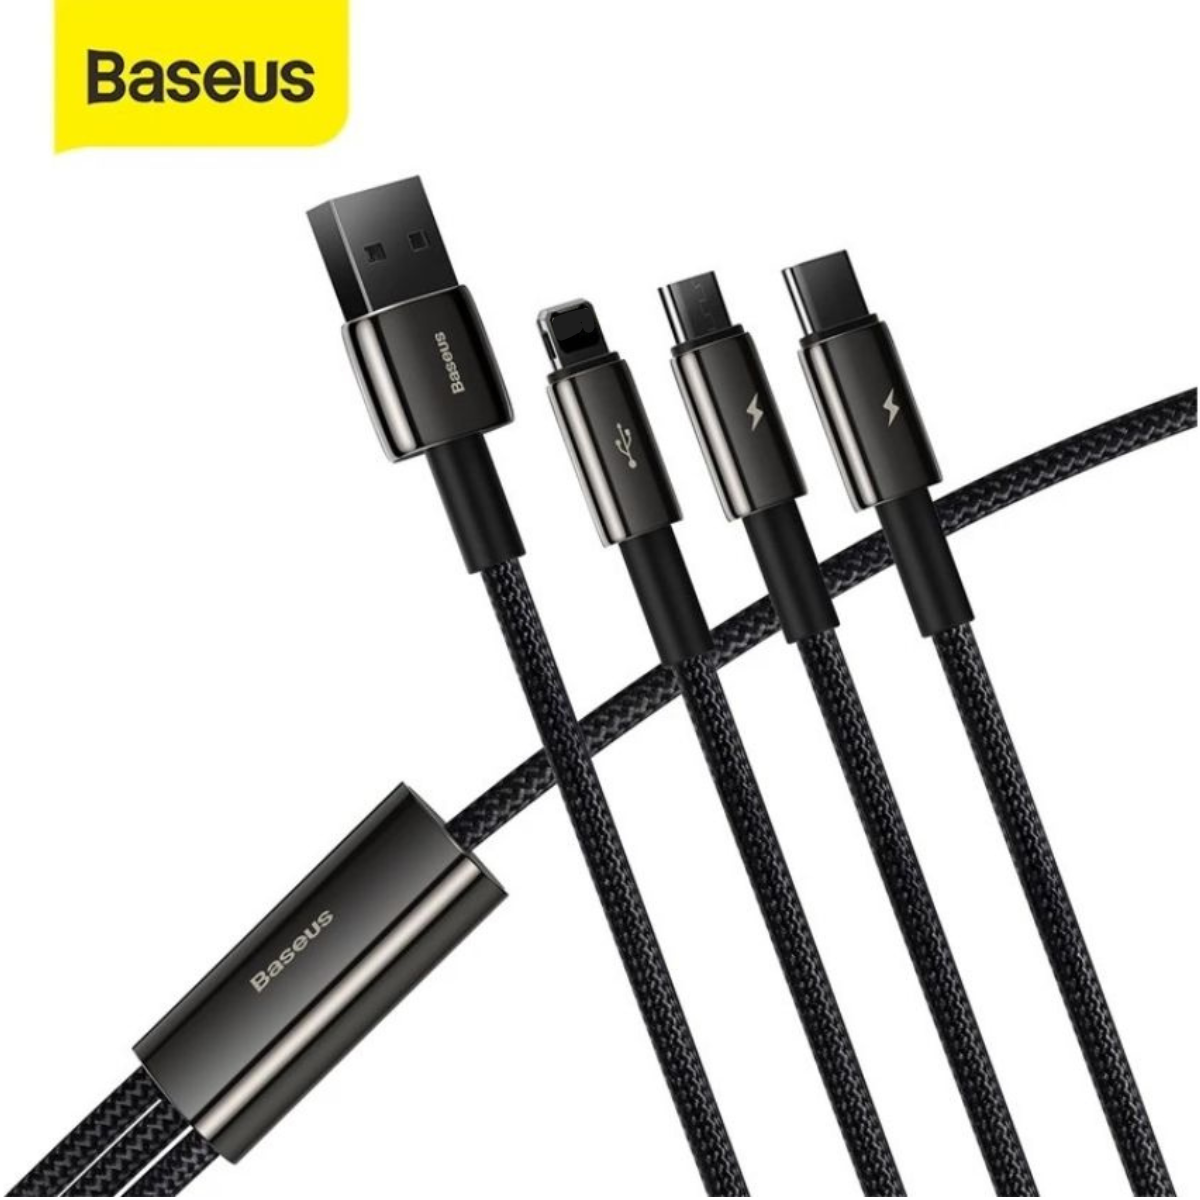 Cáp sạc 3 đầu siêu bền Baseus Tungsten Gold Series 3 in 1 (USB to Type C/ Light-ning/ Micro USB, 3.5A Fast Charging &amp; Data Cable)- Hàng chính hãng